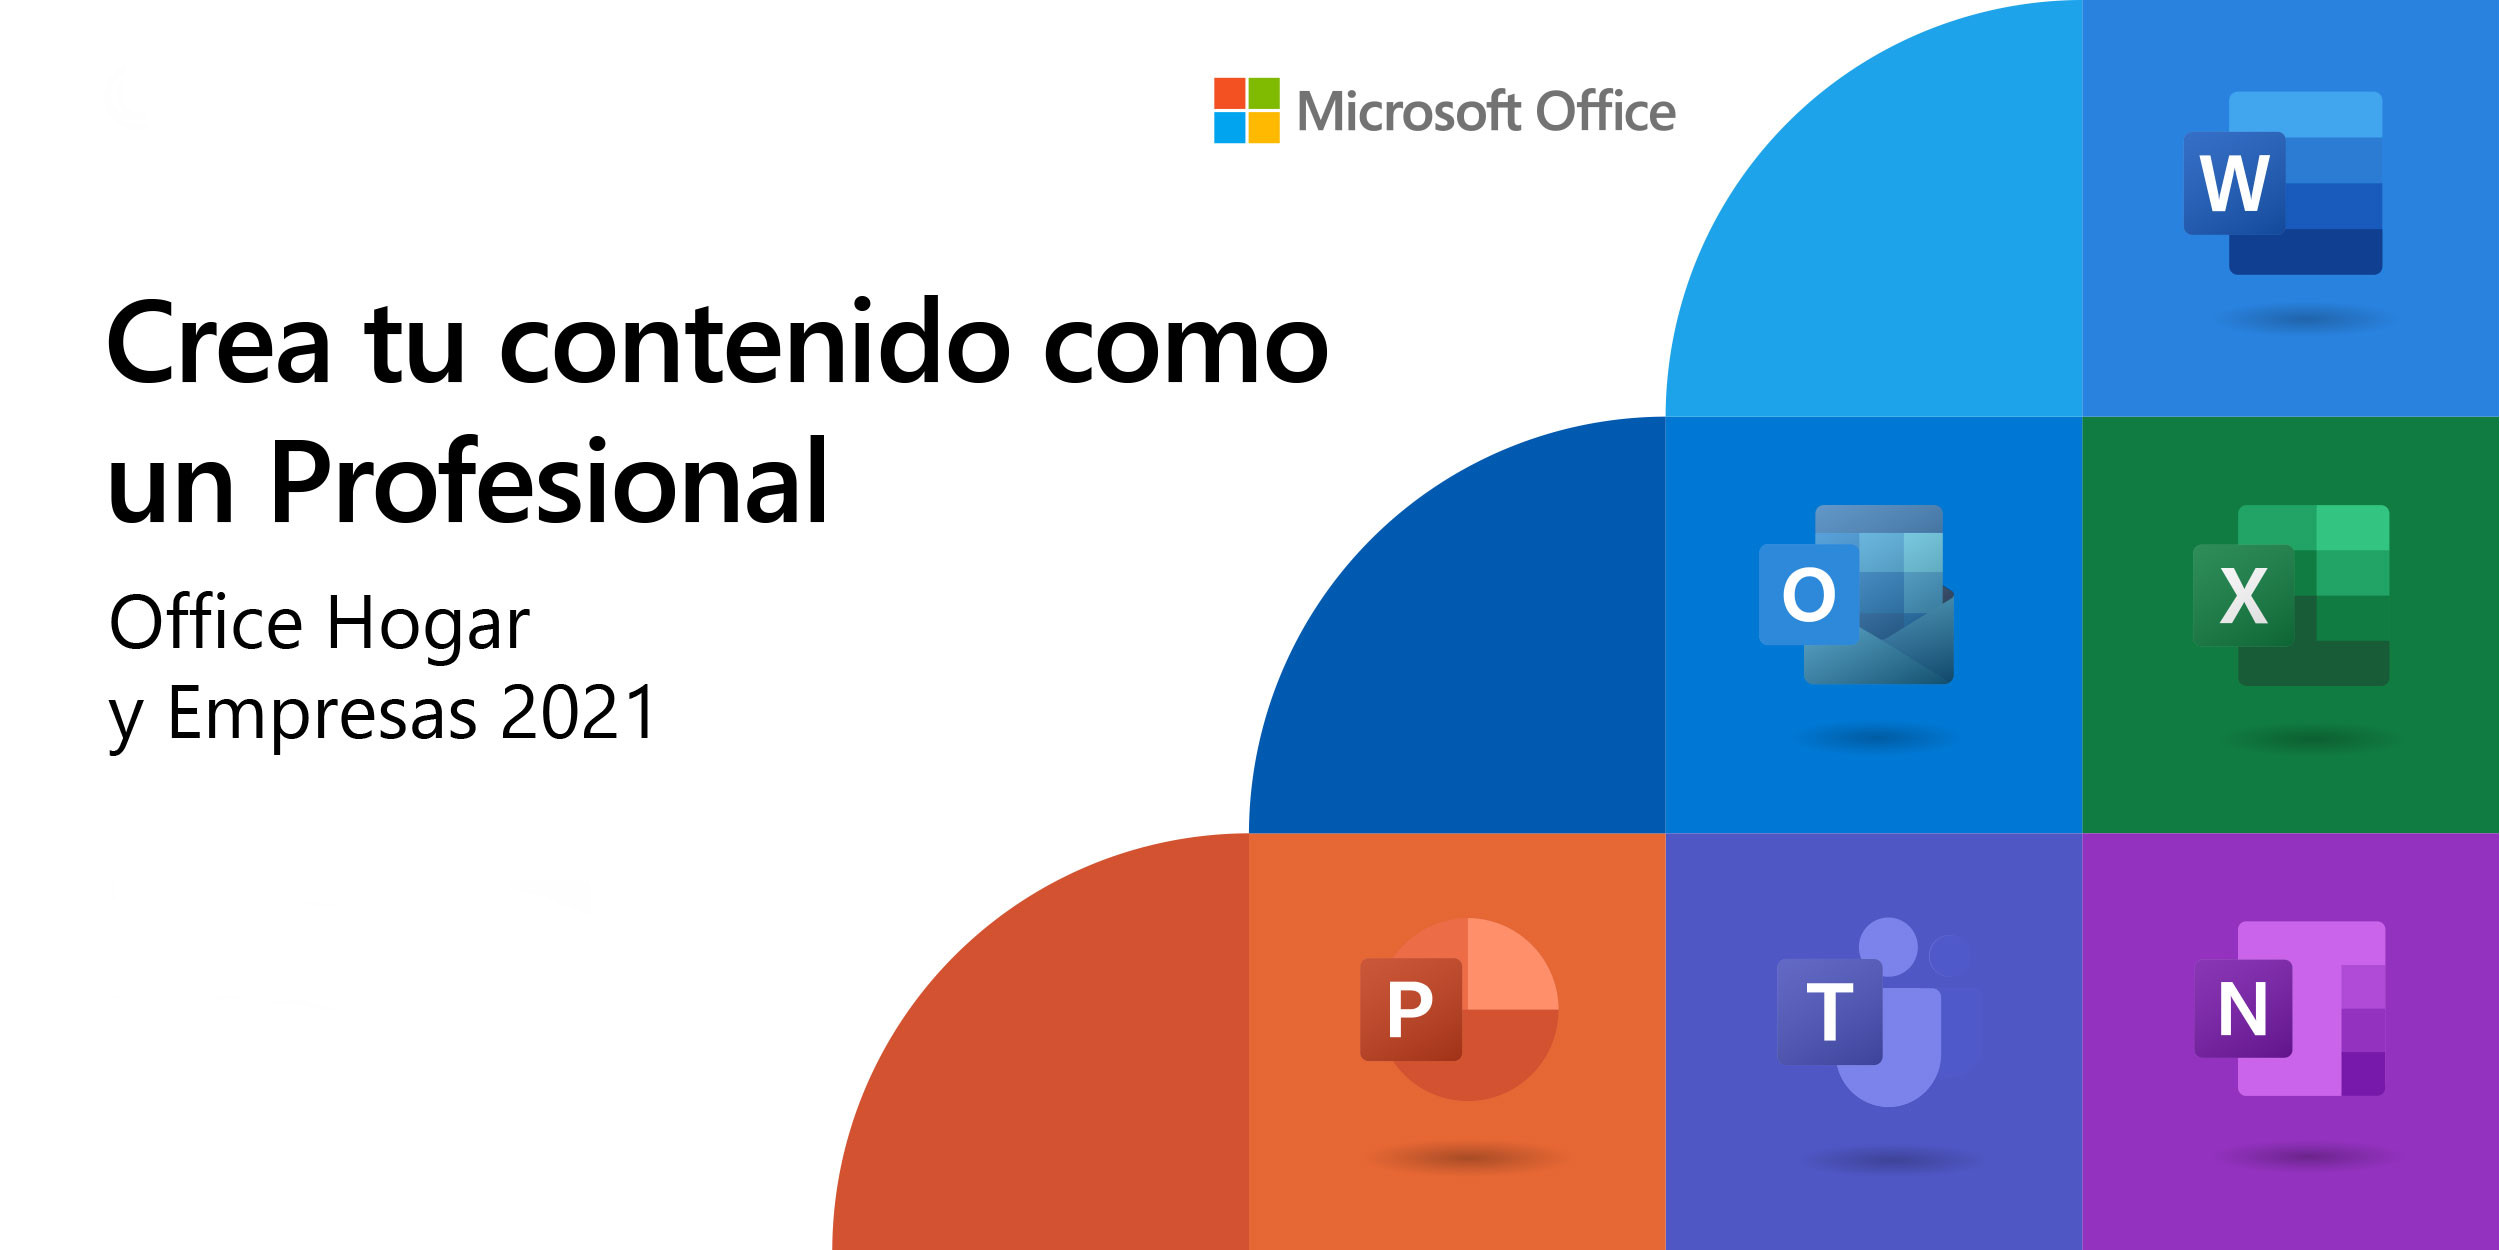 Microsoft Office Hogar y Empresas